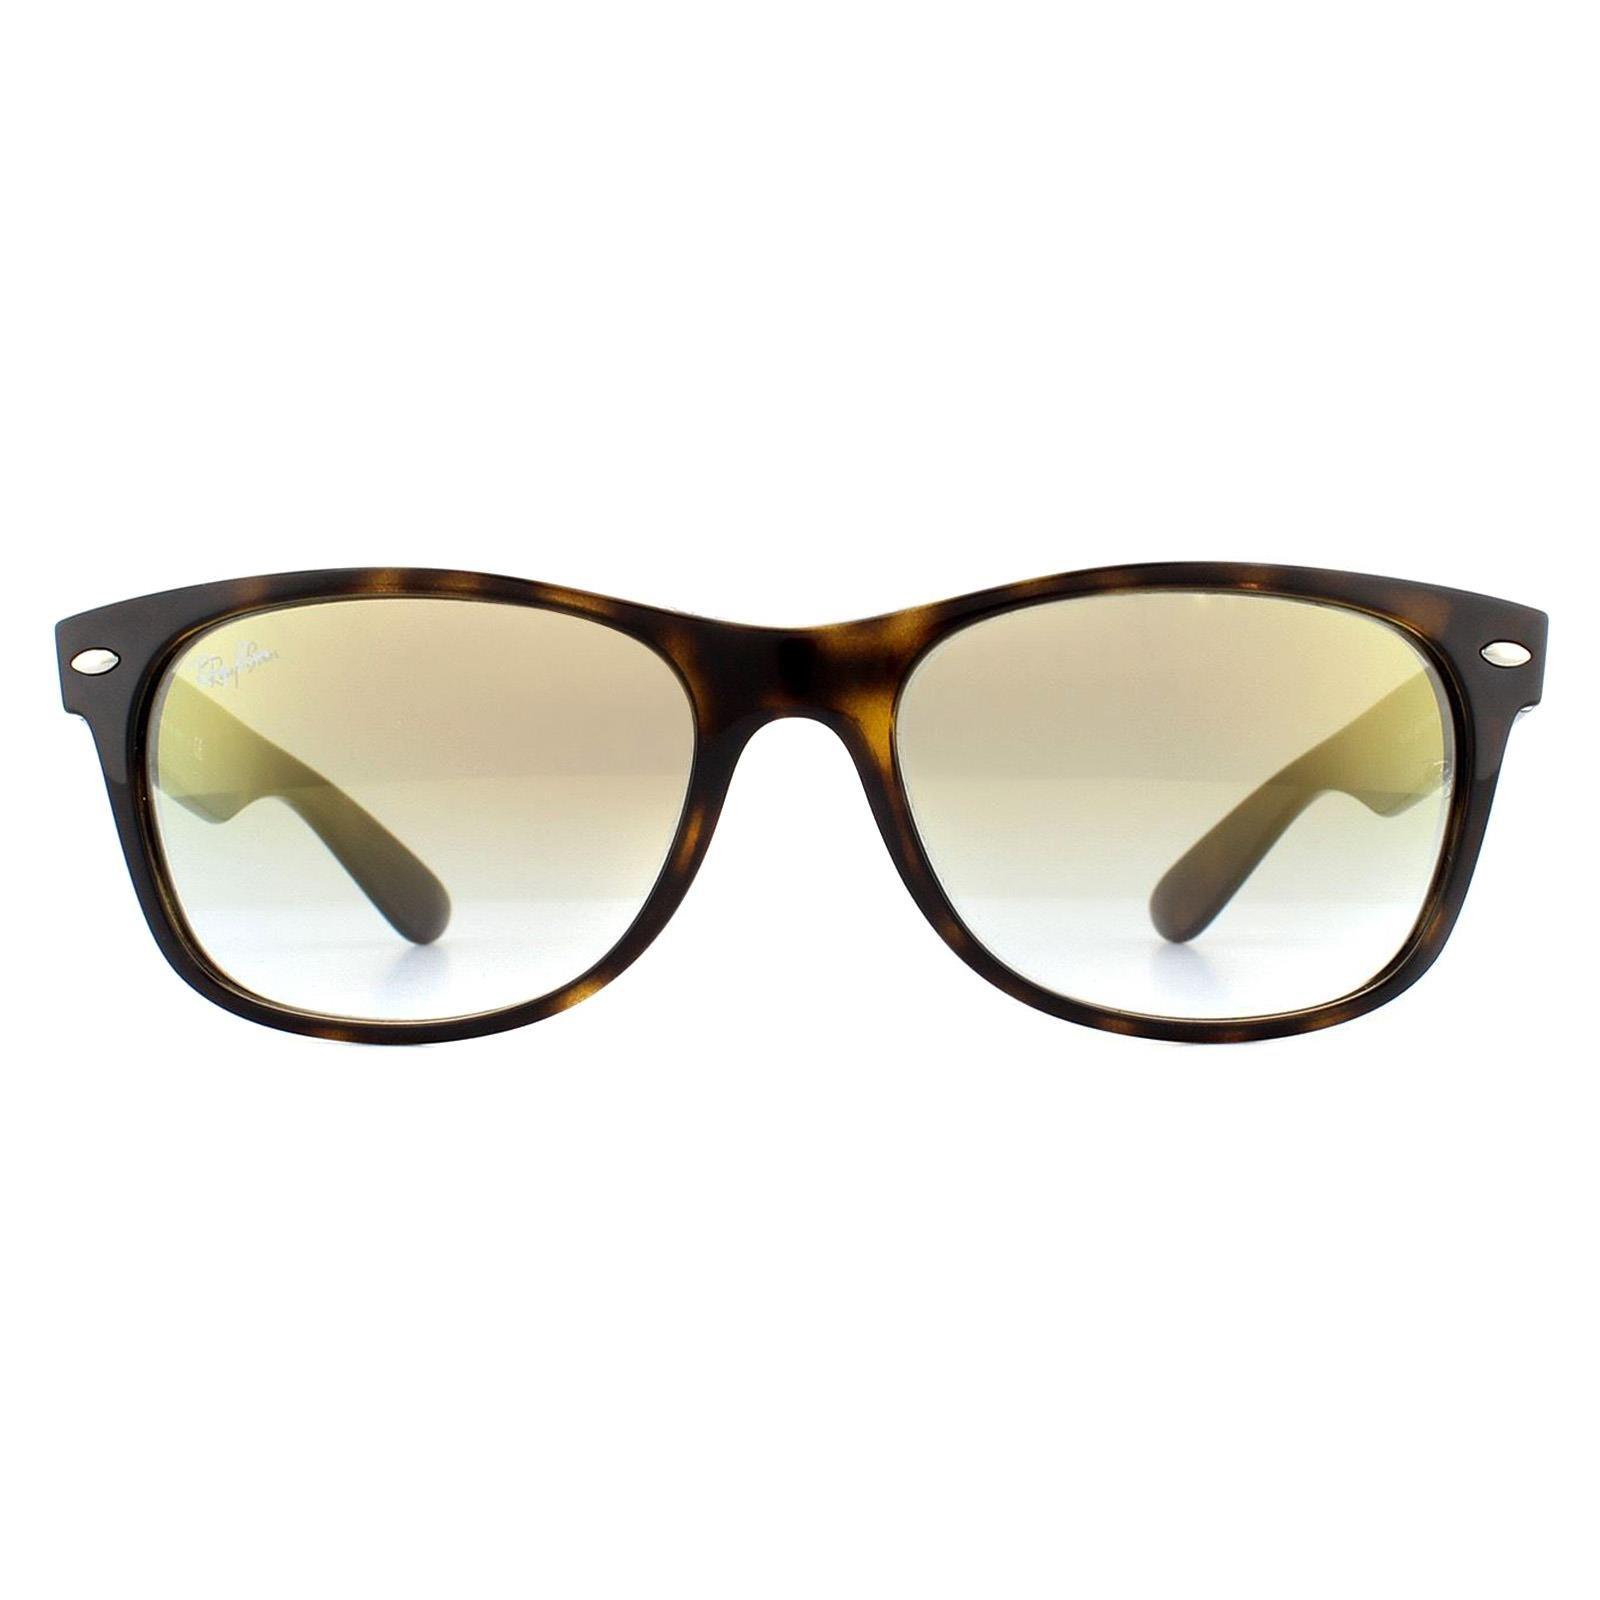 Прямоугольные черепаховые солнцезащитные очки с градиентом и золотистыми вспышками Ray-Ban, коричневый